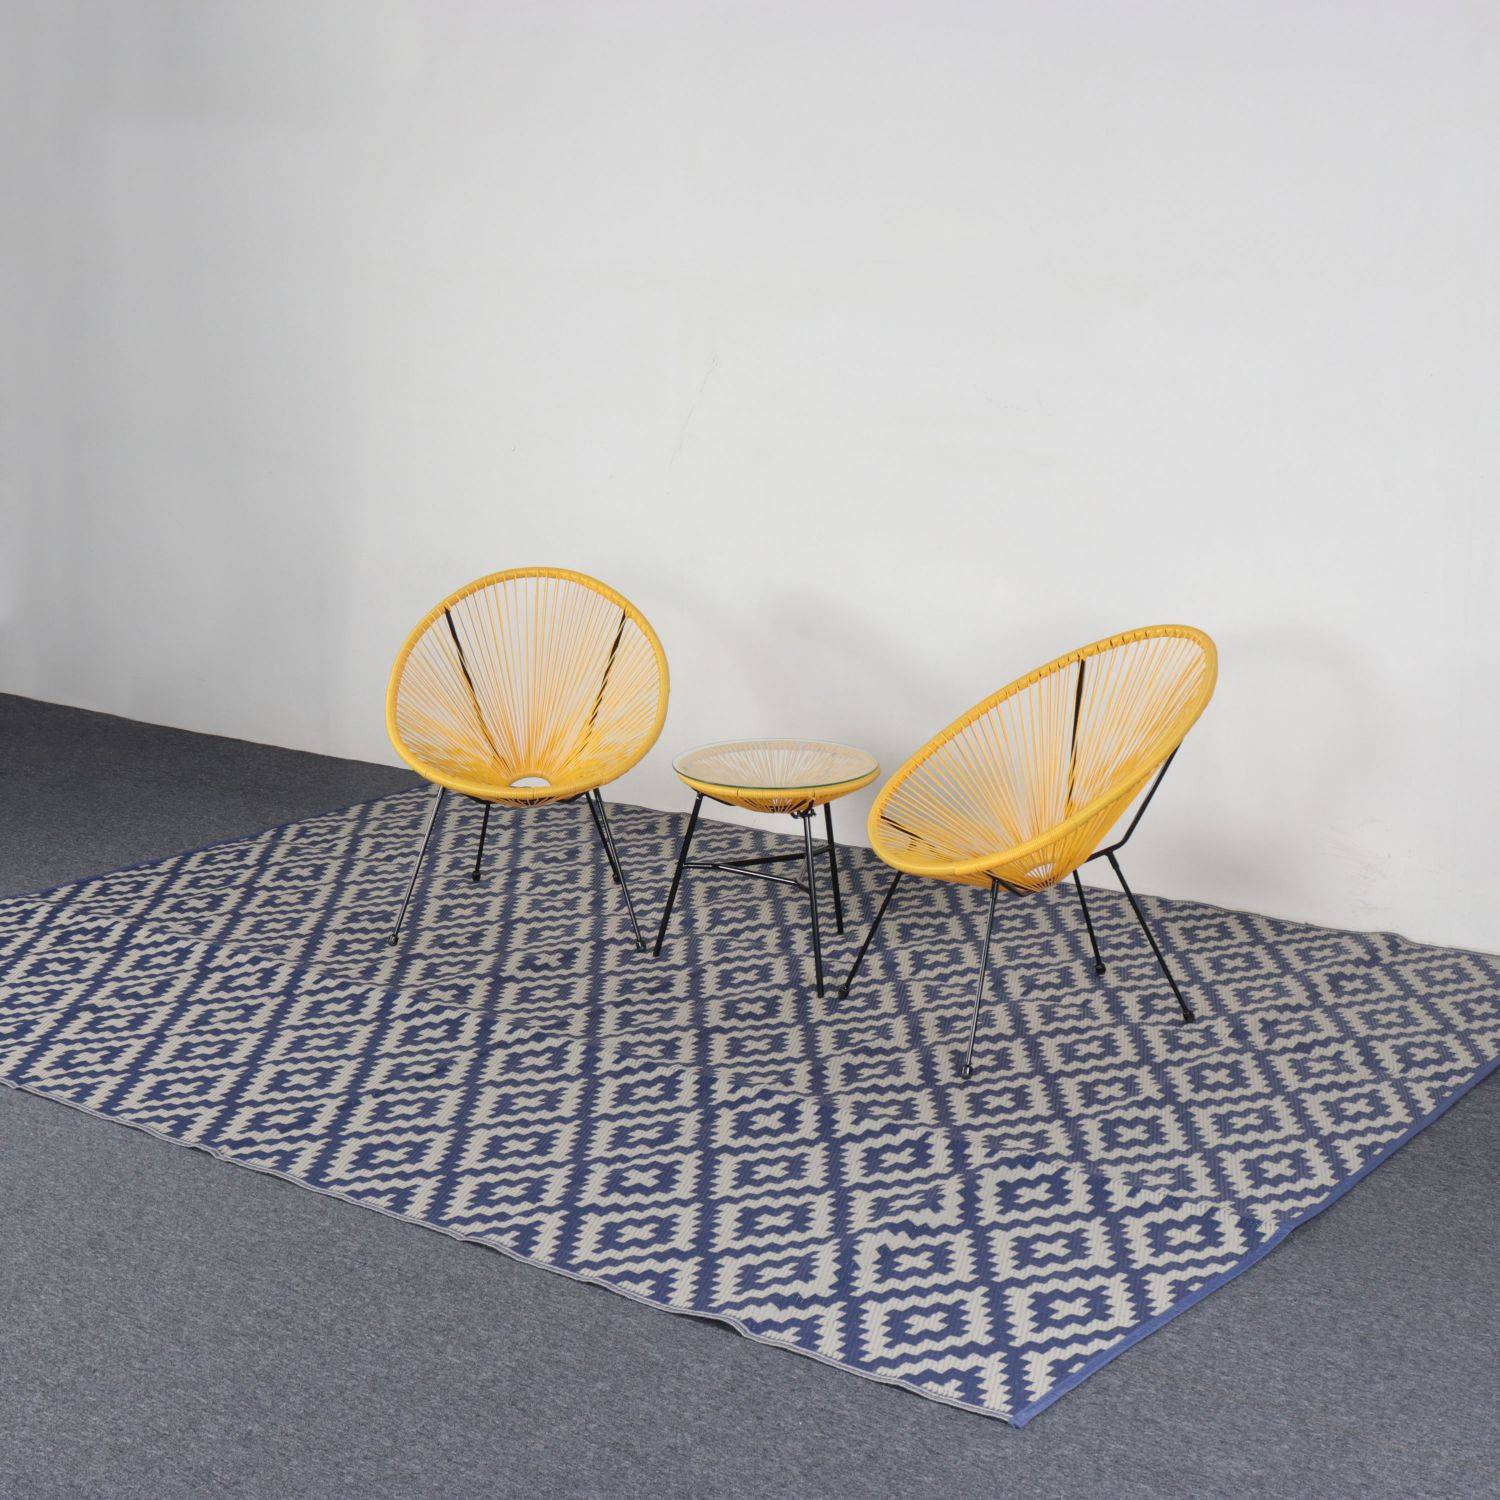 Tapis d’extérieur 270x360cm STOCKHOLM - Rectangulaire, motif losanges bleu / beige, jacquard, réversible, indoor / outdoor, Photo4